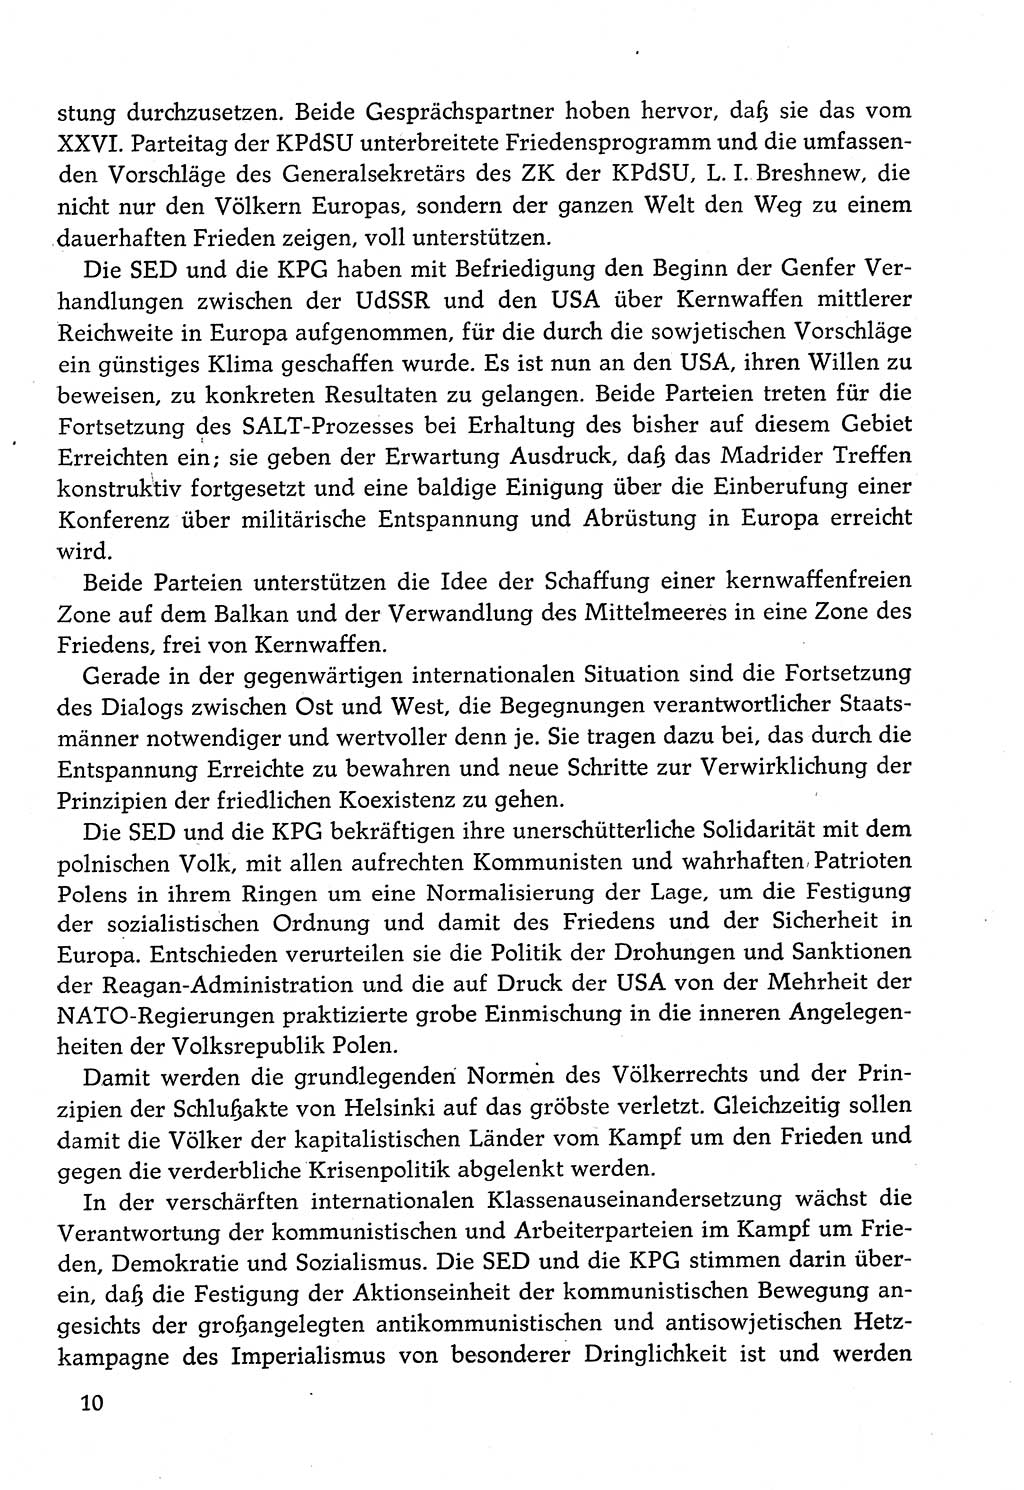 Dokumente der Sozialistischen Einheitspartei Deutschlands (SED) [Deutsche Demokratische Republik (DDR)] 1982-1983, Seite 10 (Dok. SED DDR 1982-1983, S. 10)